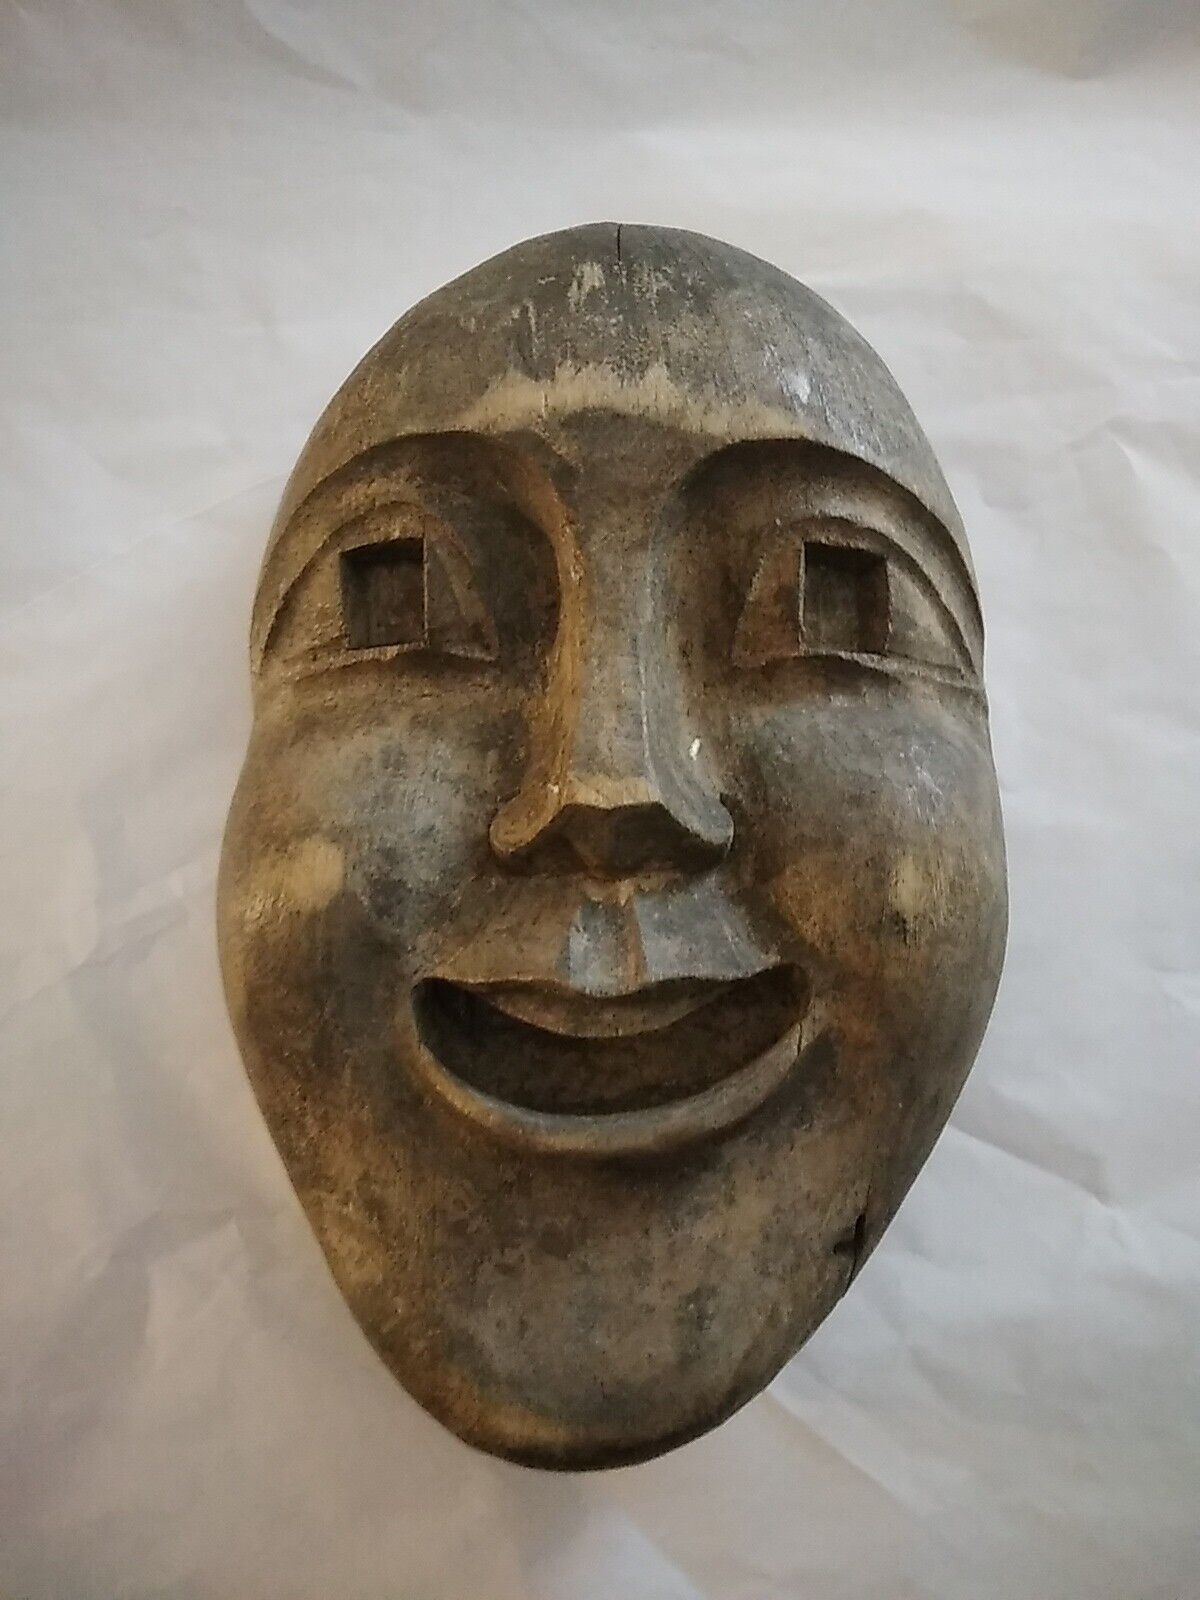 Vintage Handcarved Wooden Face Mask Decor Folkart Unique Odd Distressed 3D